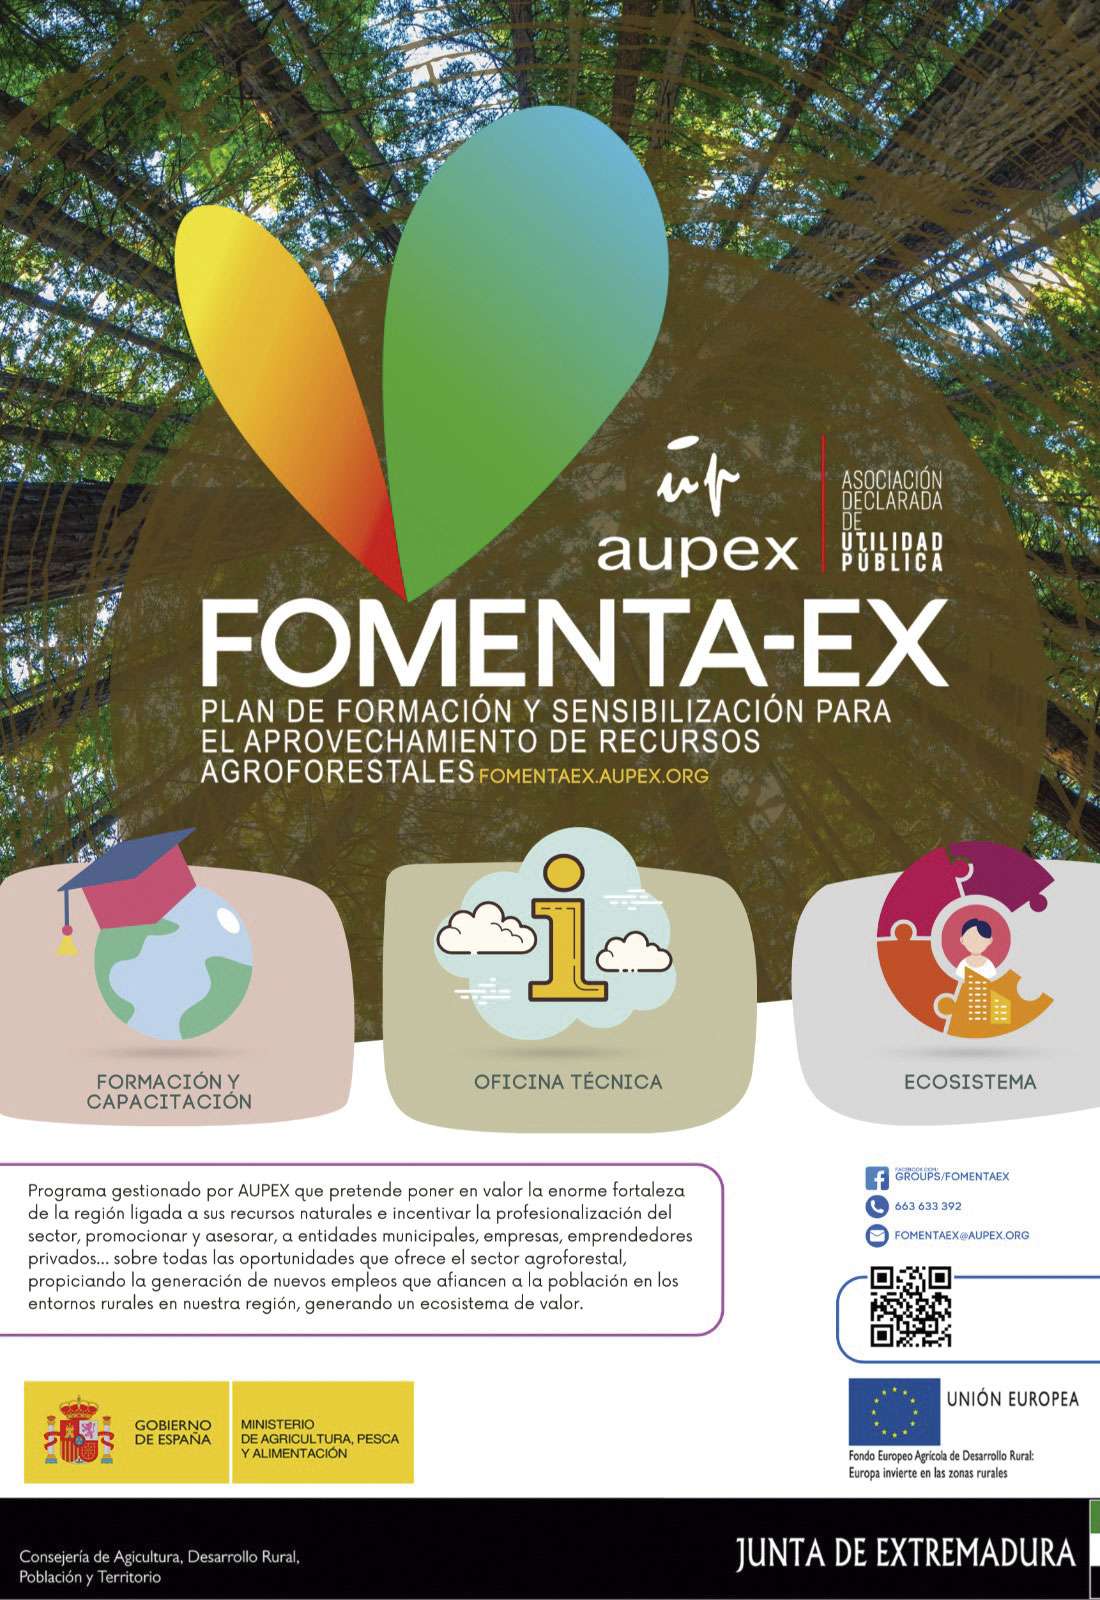 El programa Fomenta-Ex ofrece formación sobre el aprovechamiento de los recursos agroforestales